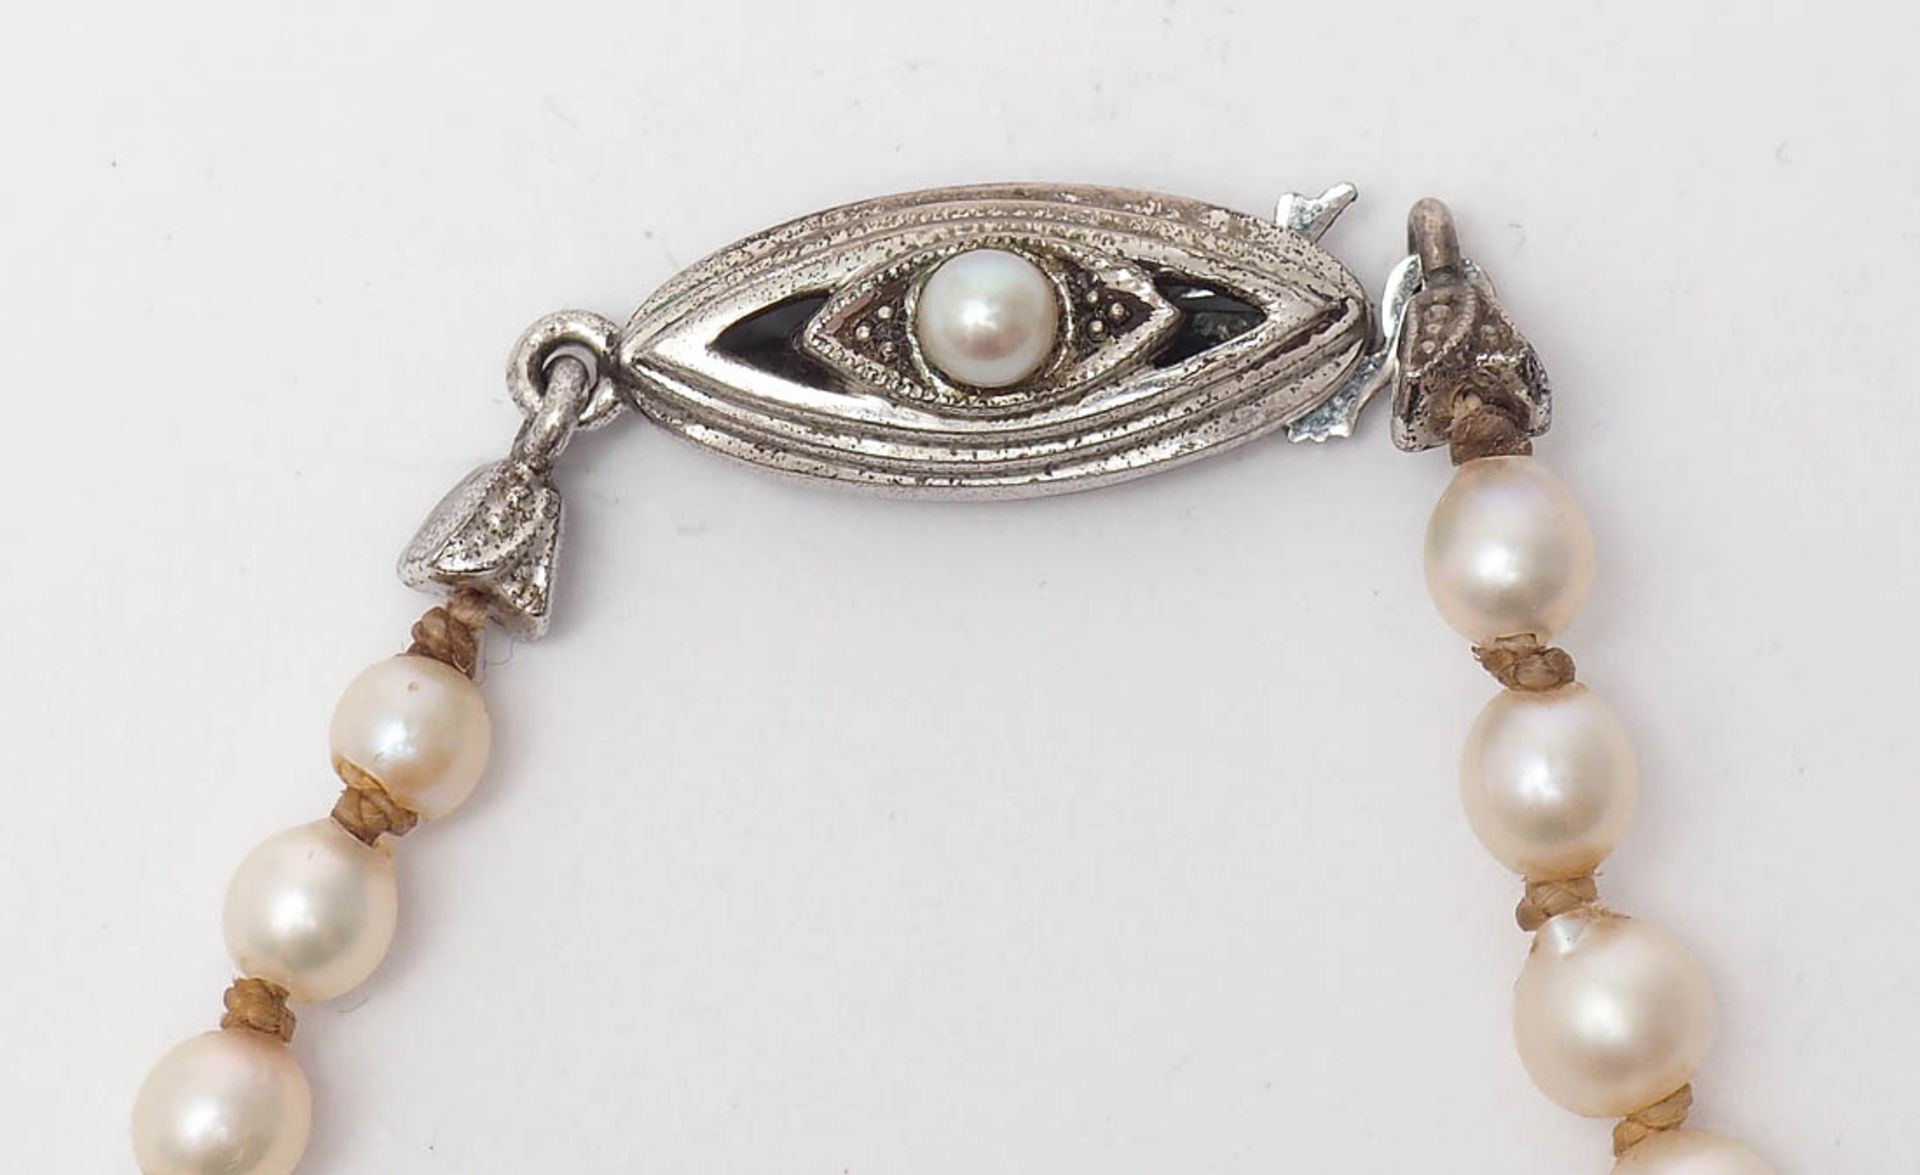 Zuchtperlkette Ovales Silberschloss mit einzelner Perle. L.46cm. - Bild 2 aus 3